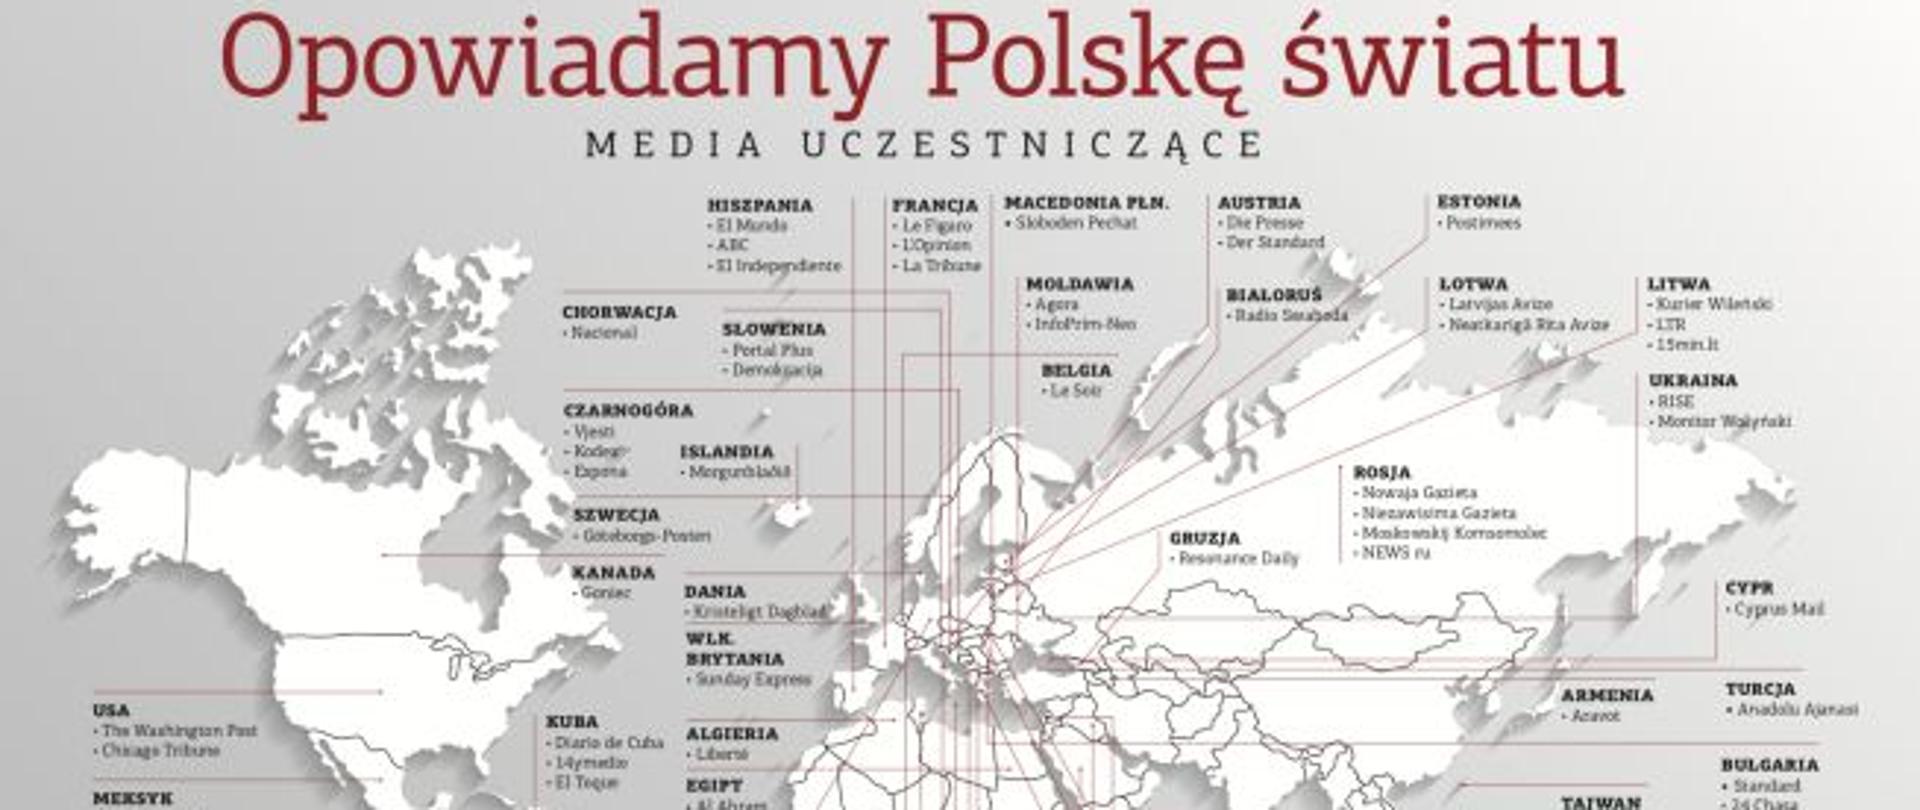 Opowiadamy Polskę światu